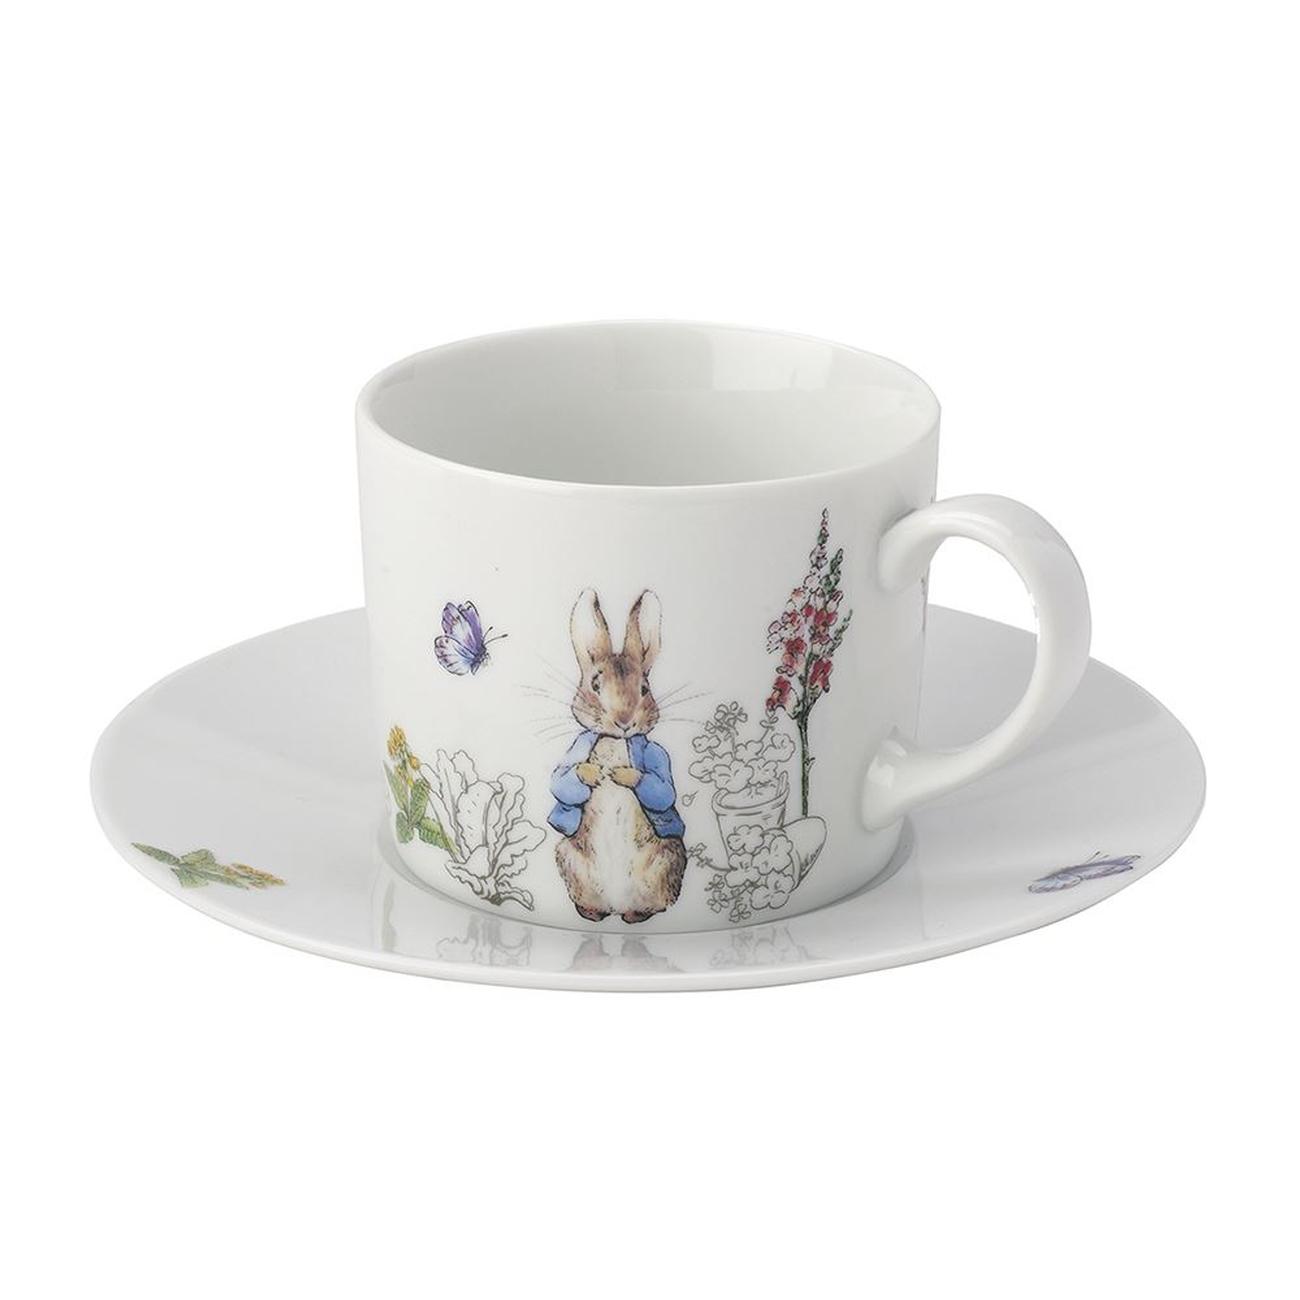 Peter Rabbit Classic Cup & Saucer Set